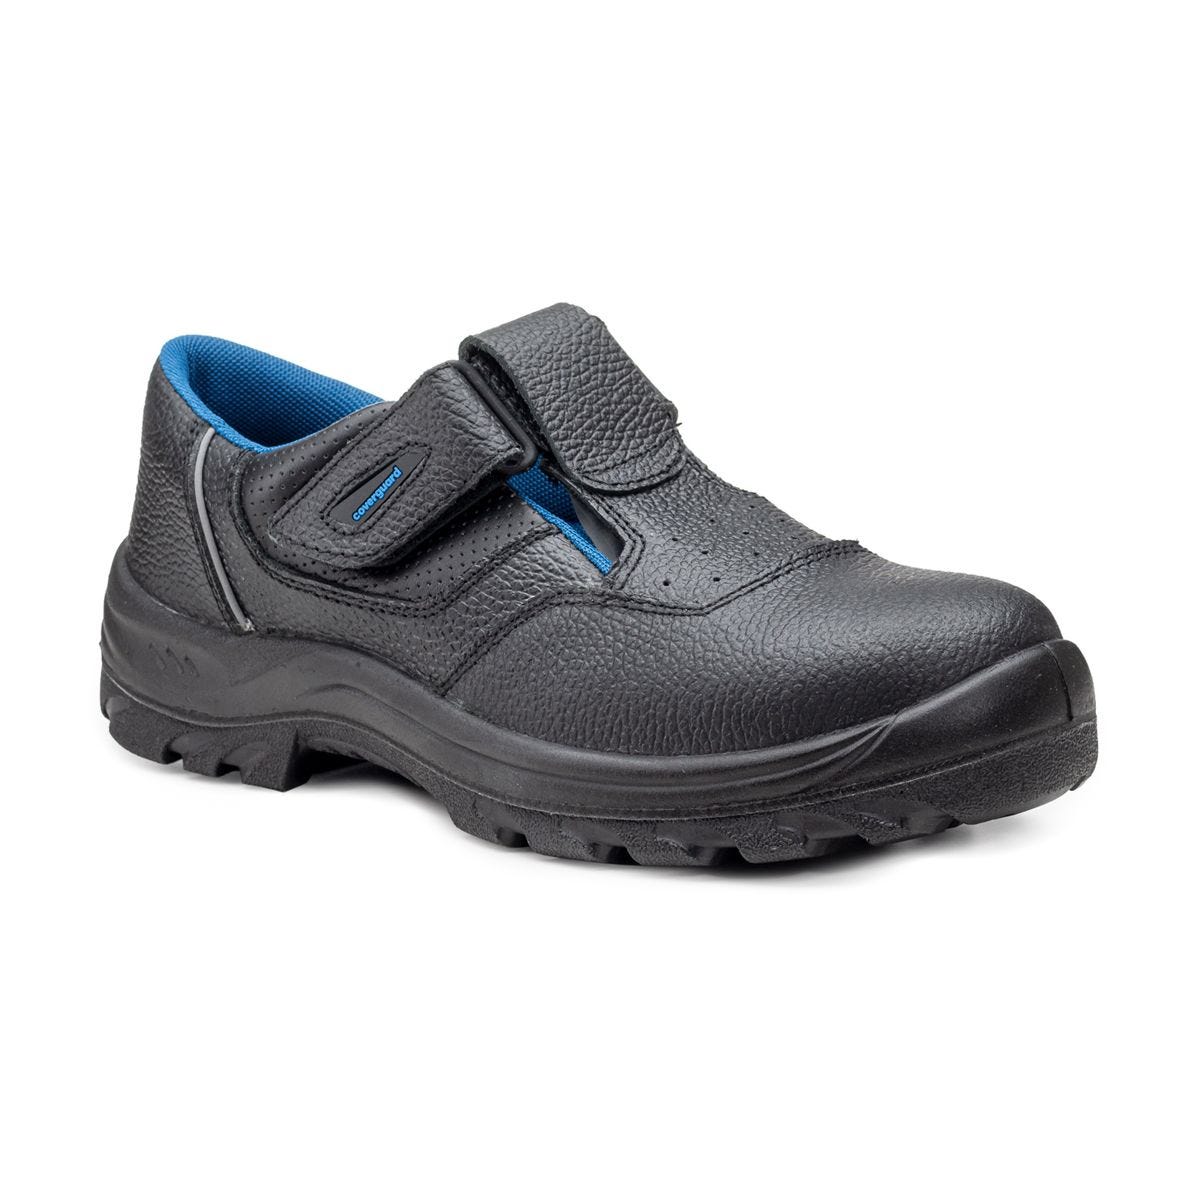 Sandales de sécurité basses Bosco II noir - Coverguard - Taille 43 0